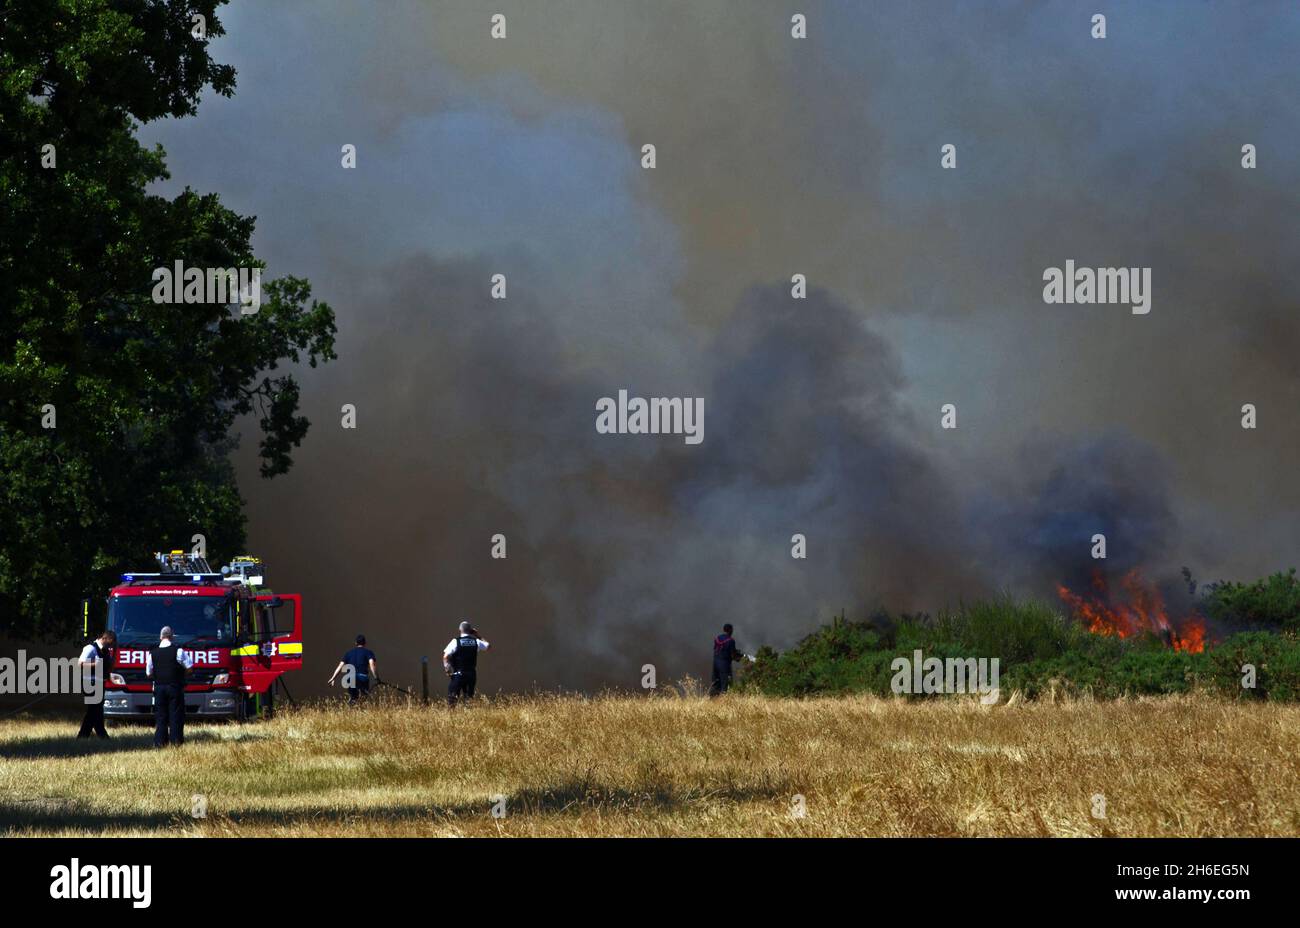 Los bomberos están tratando actualmente de controlar un incendio forestal provocado por la ola de calor en Waltham Forest, East London, esta tarde. Foto de stock